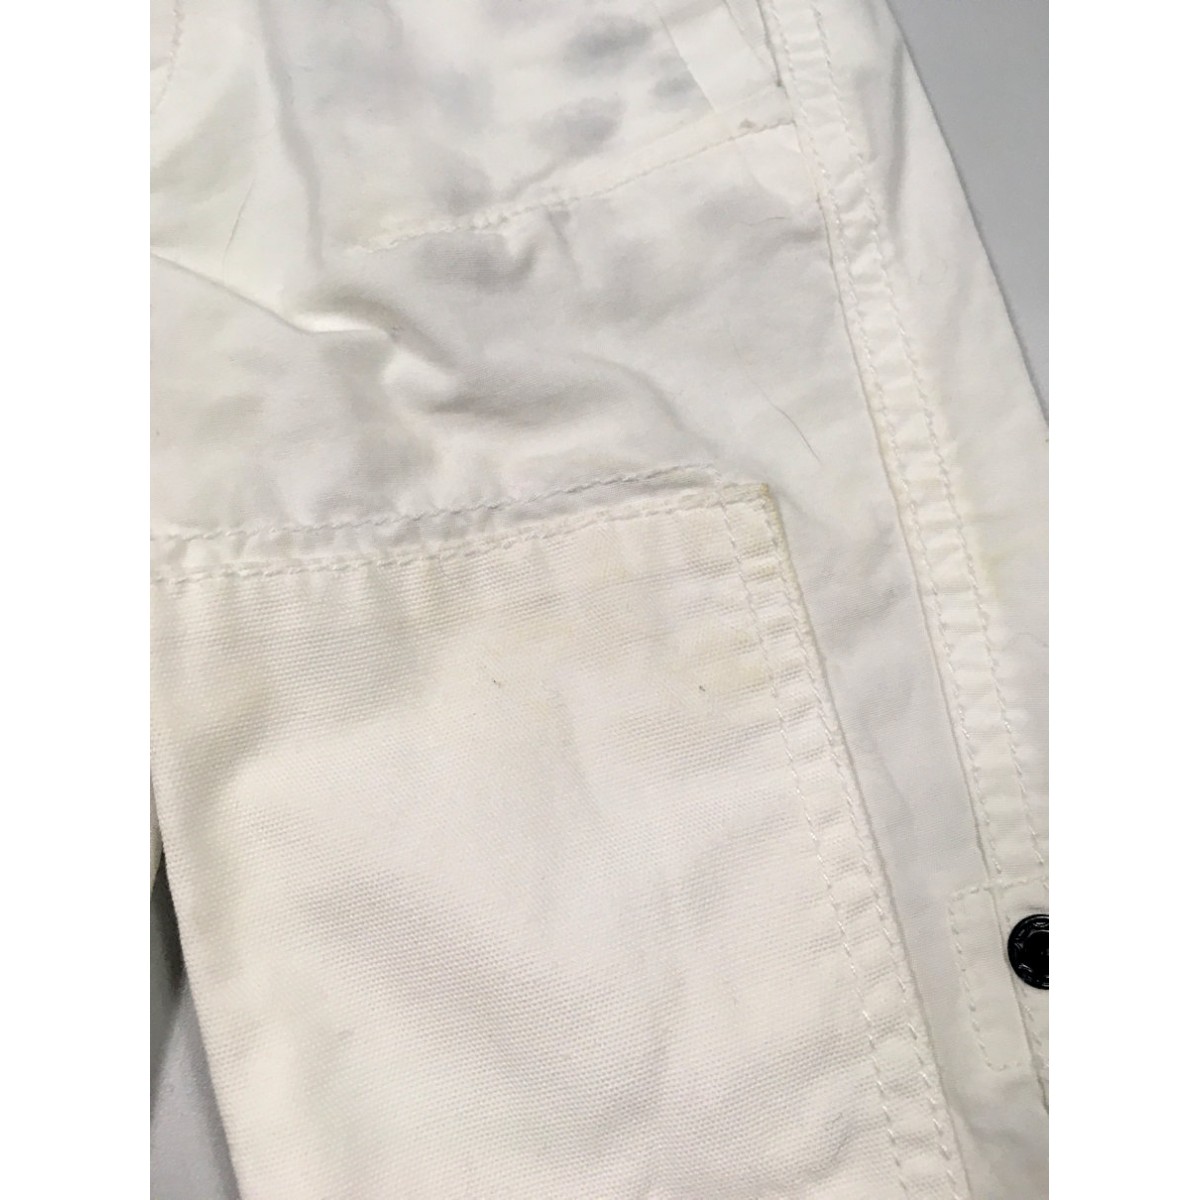 pantalon mexx blanc / 18-24 mois